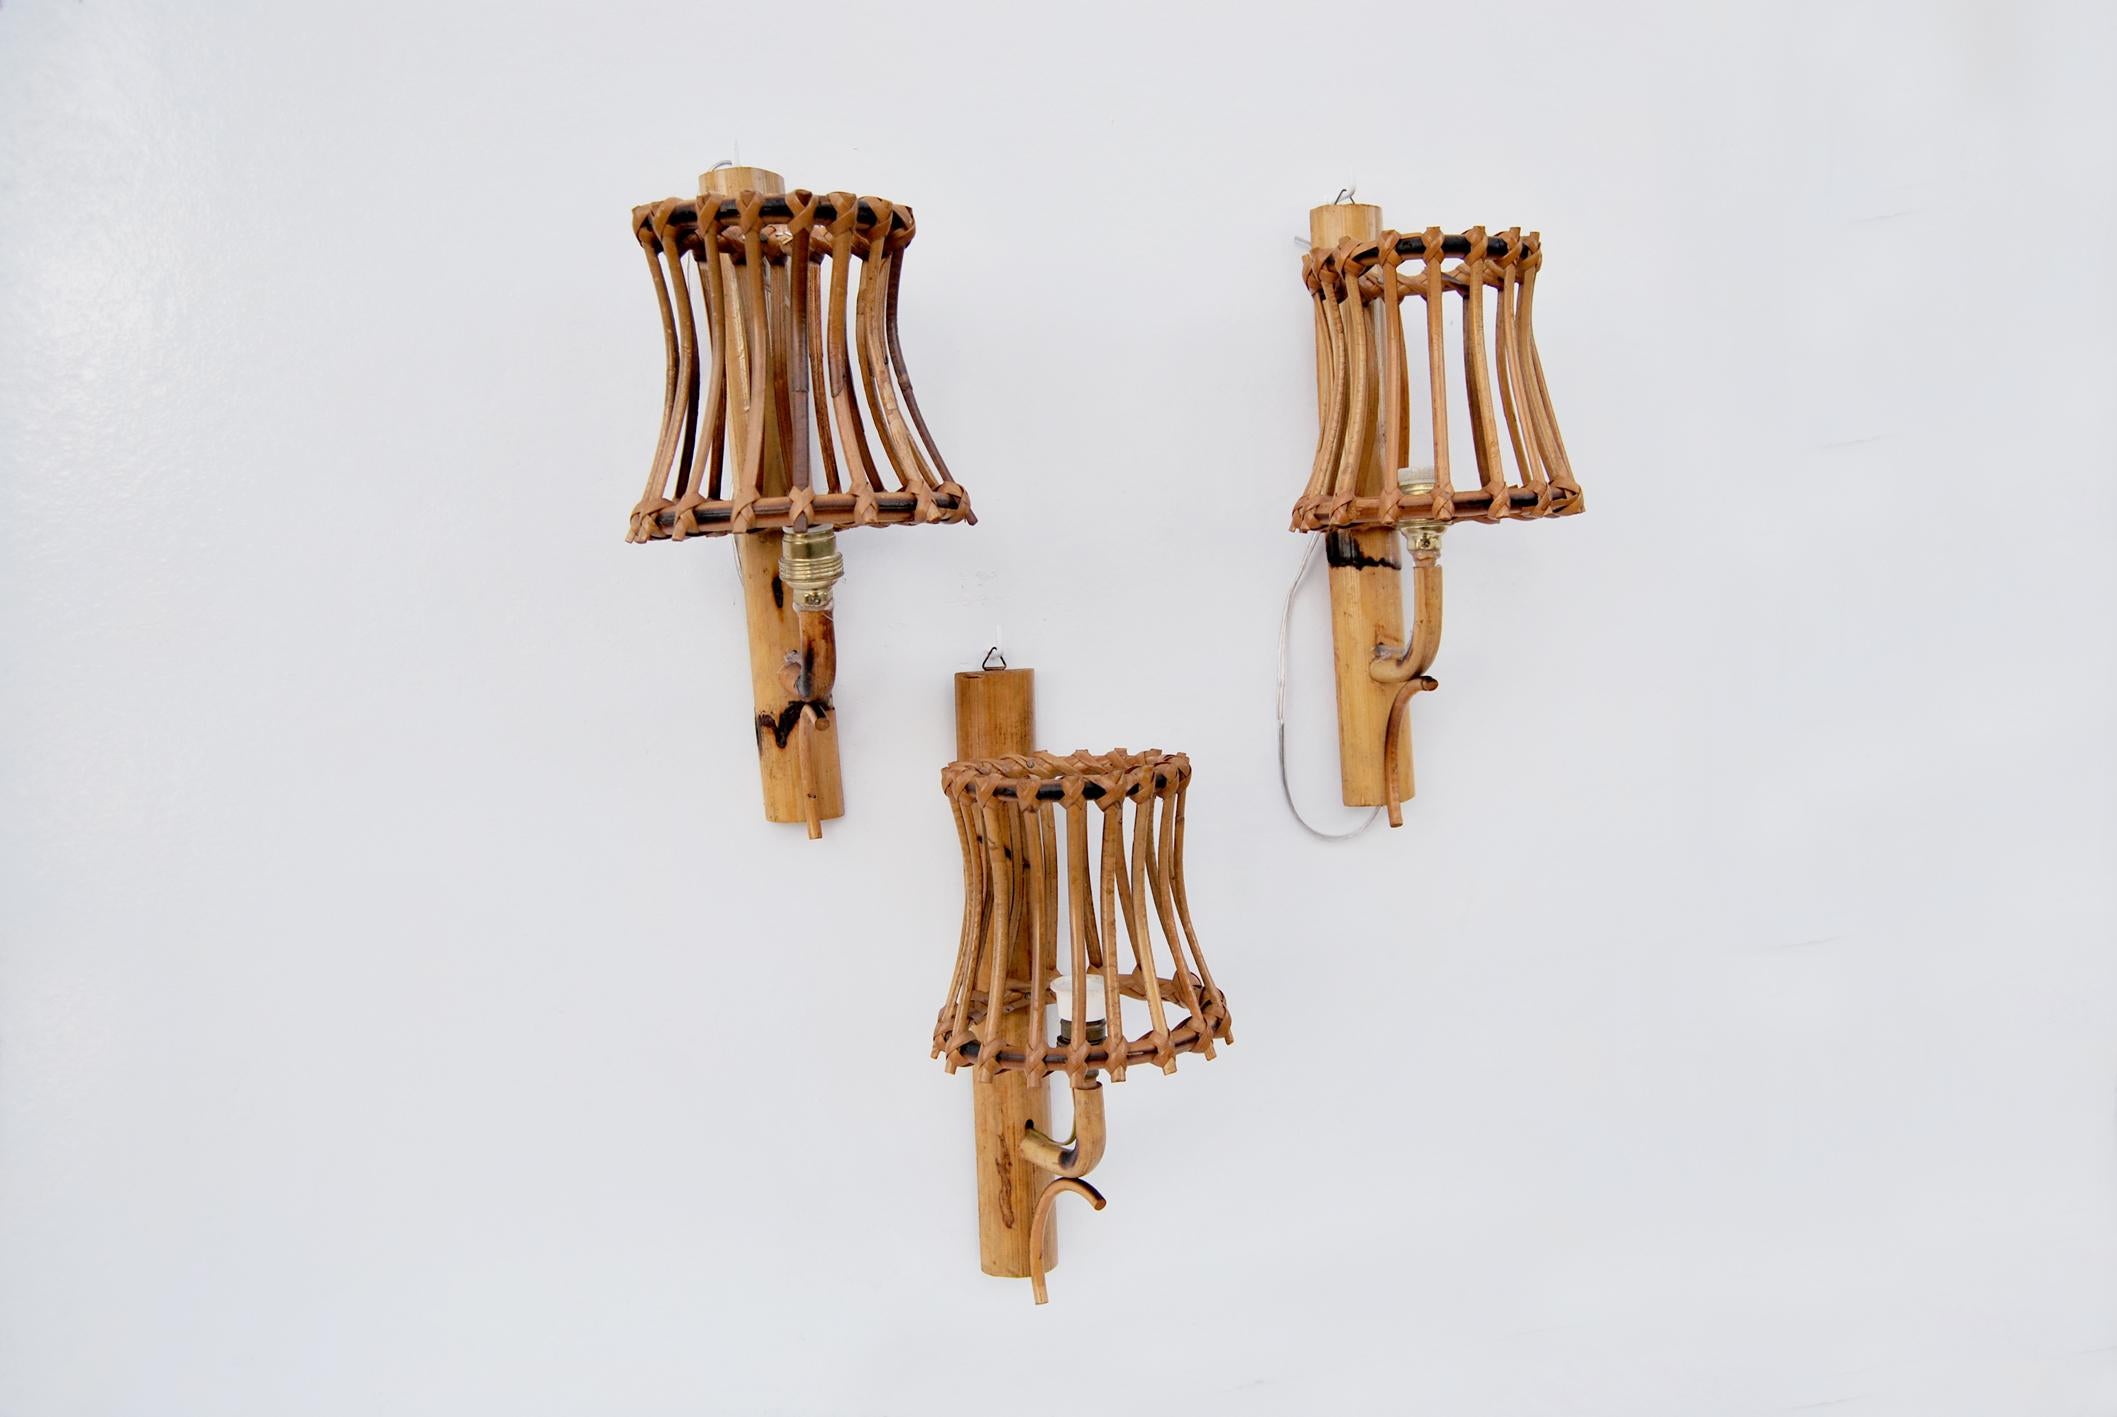 Applique in vimini e bambu' nello stile di Louis Steele, Anni' 60. 
La structure est réalisée avec de la canne de bambou étiquetée avec un motif géométrique, d'où émergent diverses cannes travaillées à la main et assemblées, toutes en rotin, qui